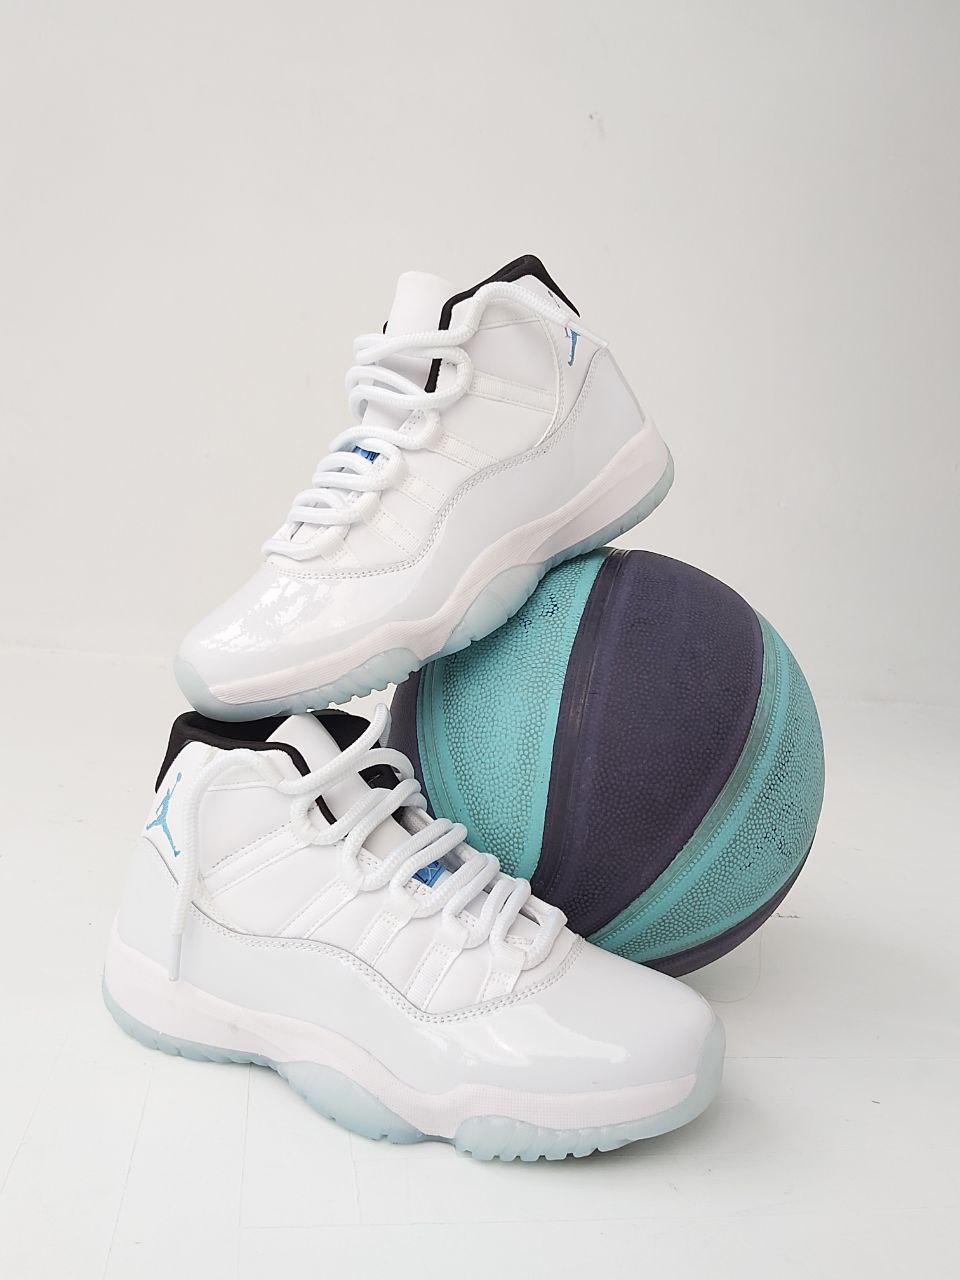 Баскетбольные кроссовки Air Jordan 11 Retro white